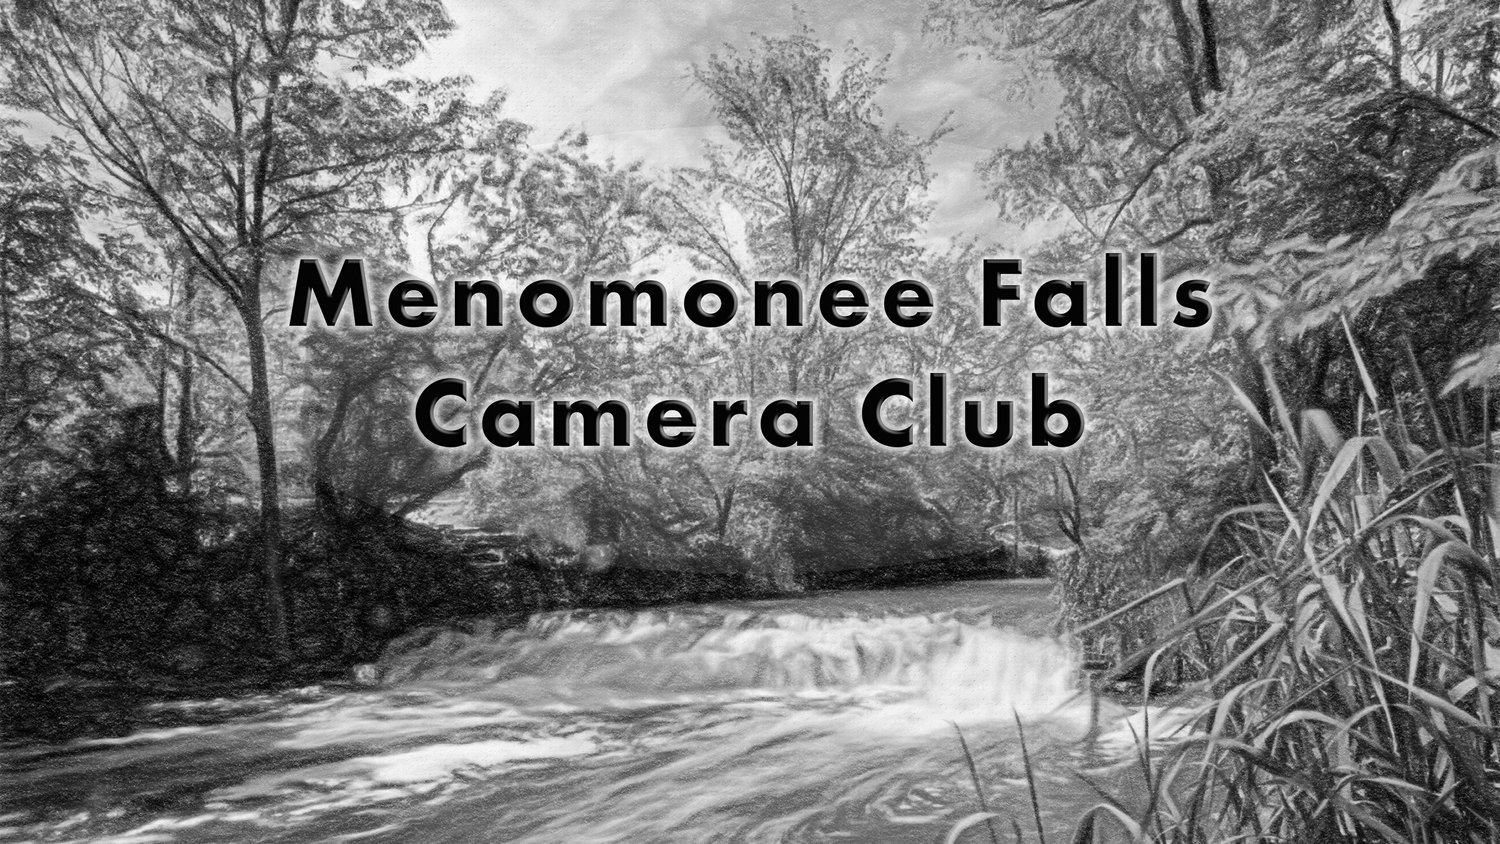 Menomonee Falls Camera Club